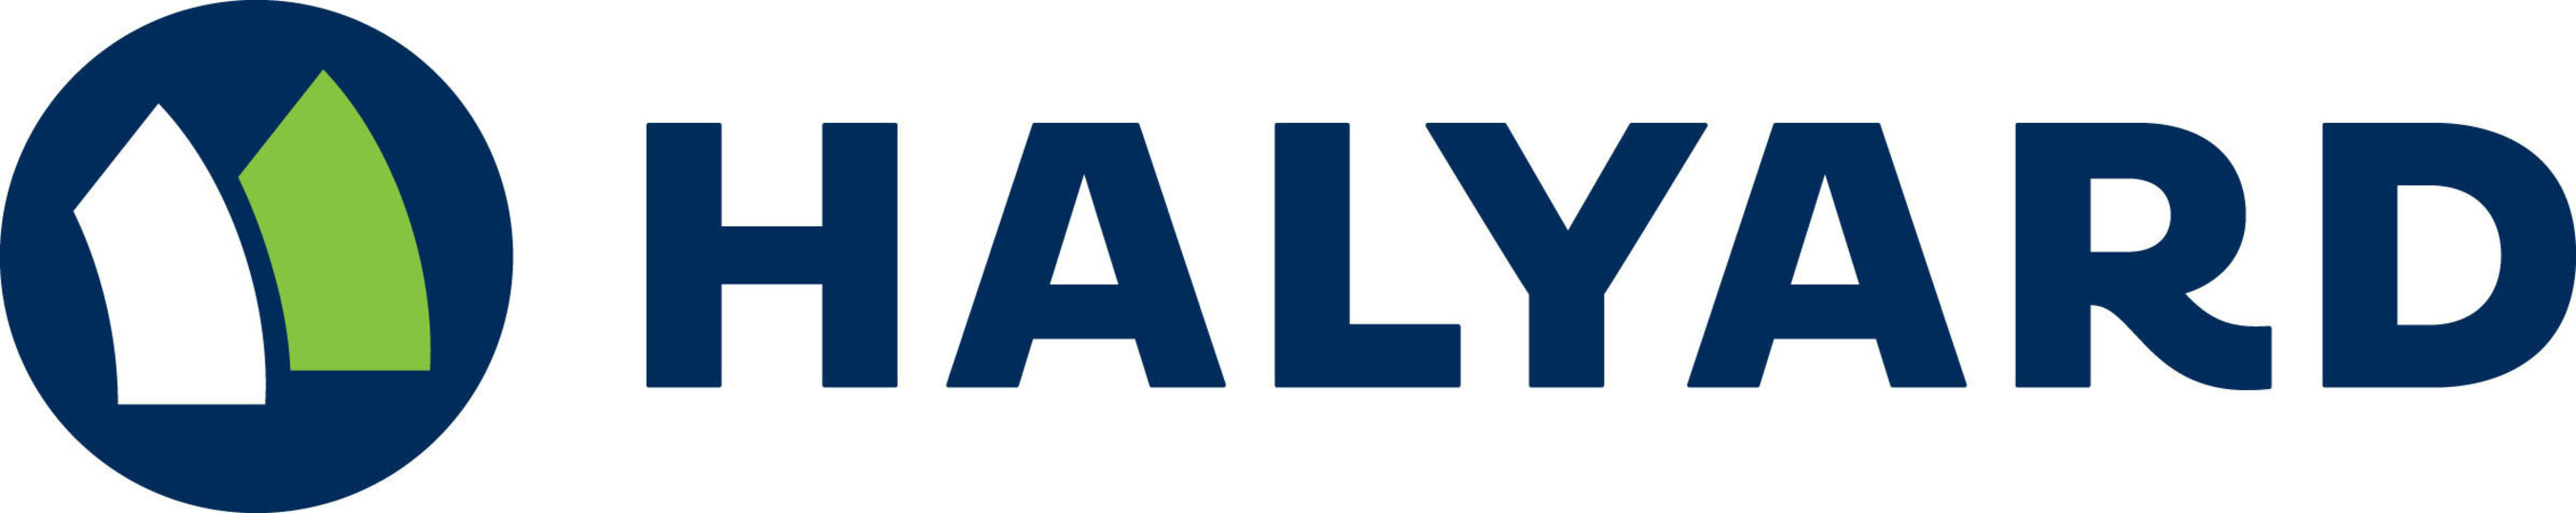 Halyard Health logo (PRNewsFoto/Halyard Health)